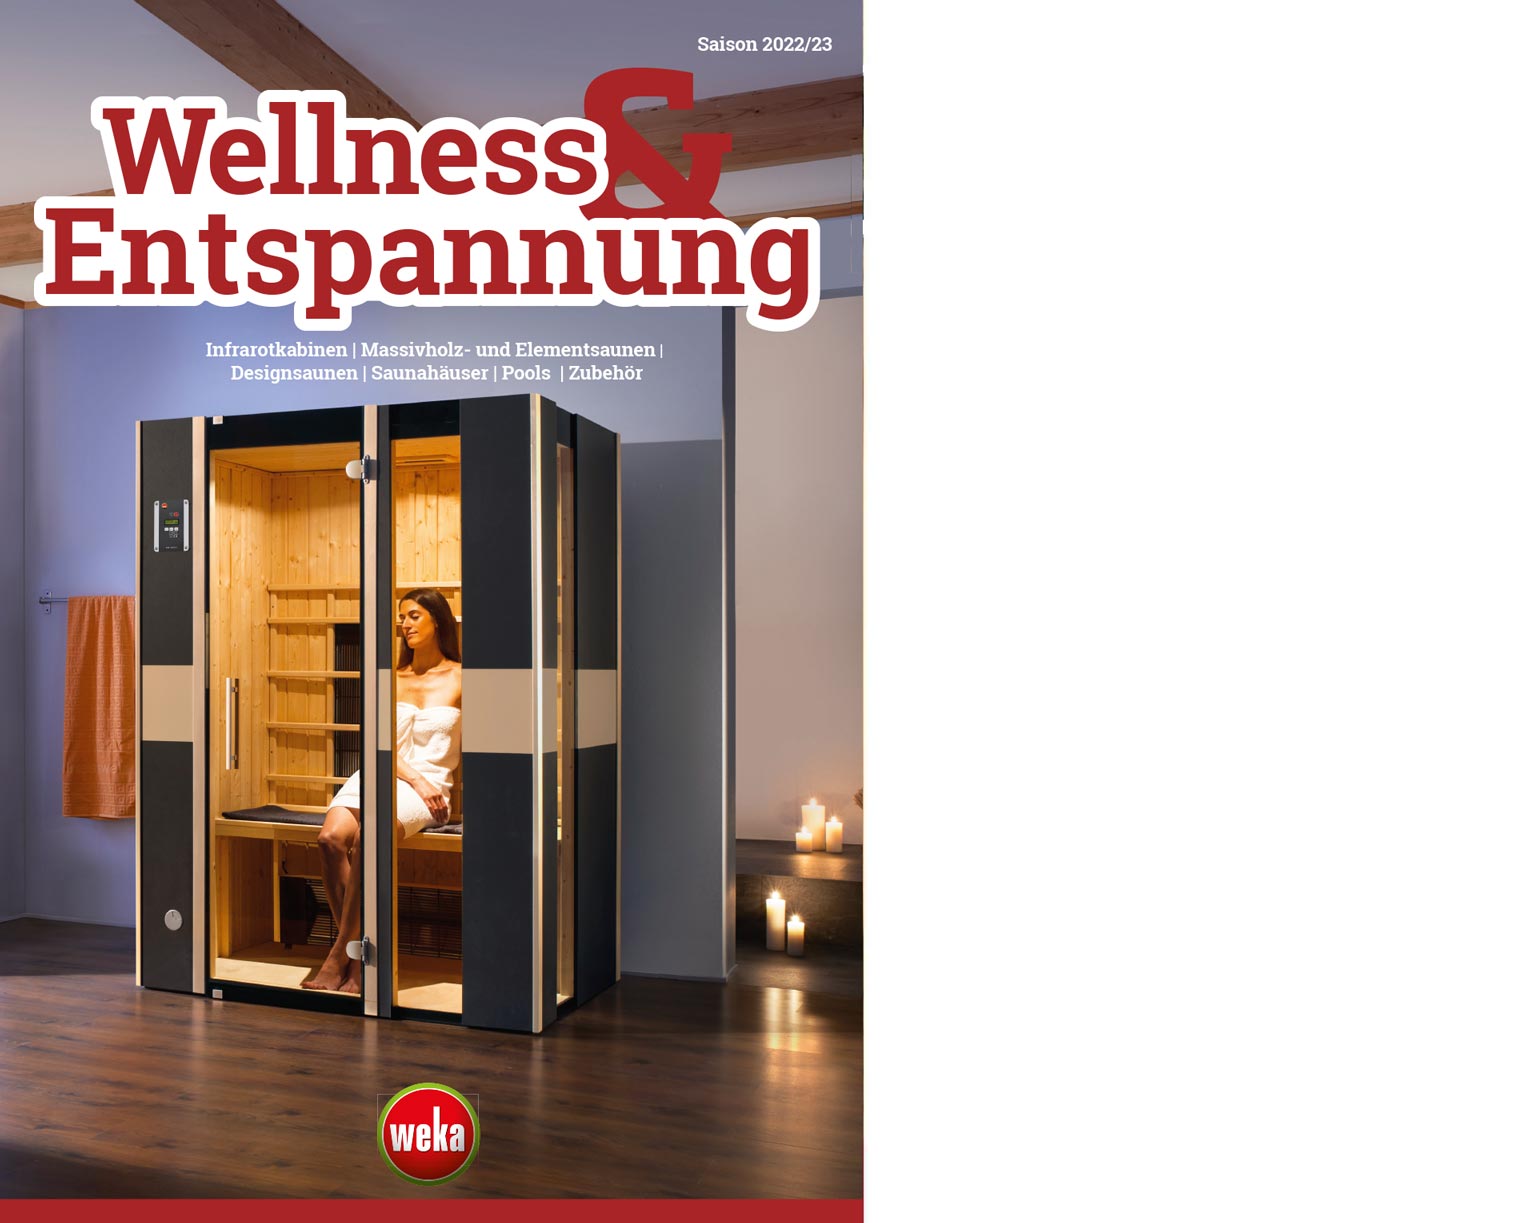 Coverbild des Weka Katalogs Wellness und Entspannung